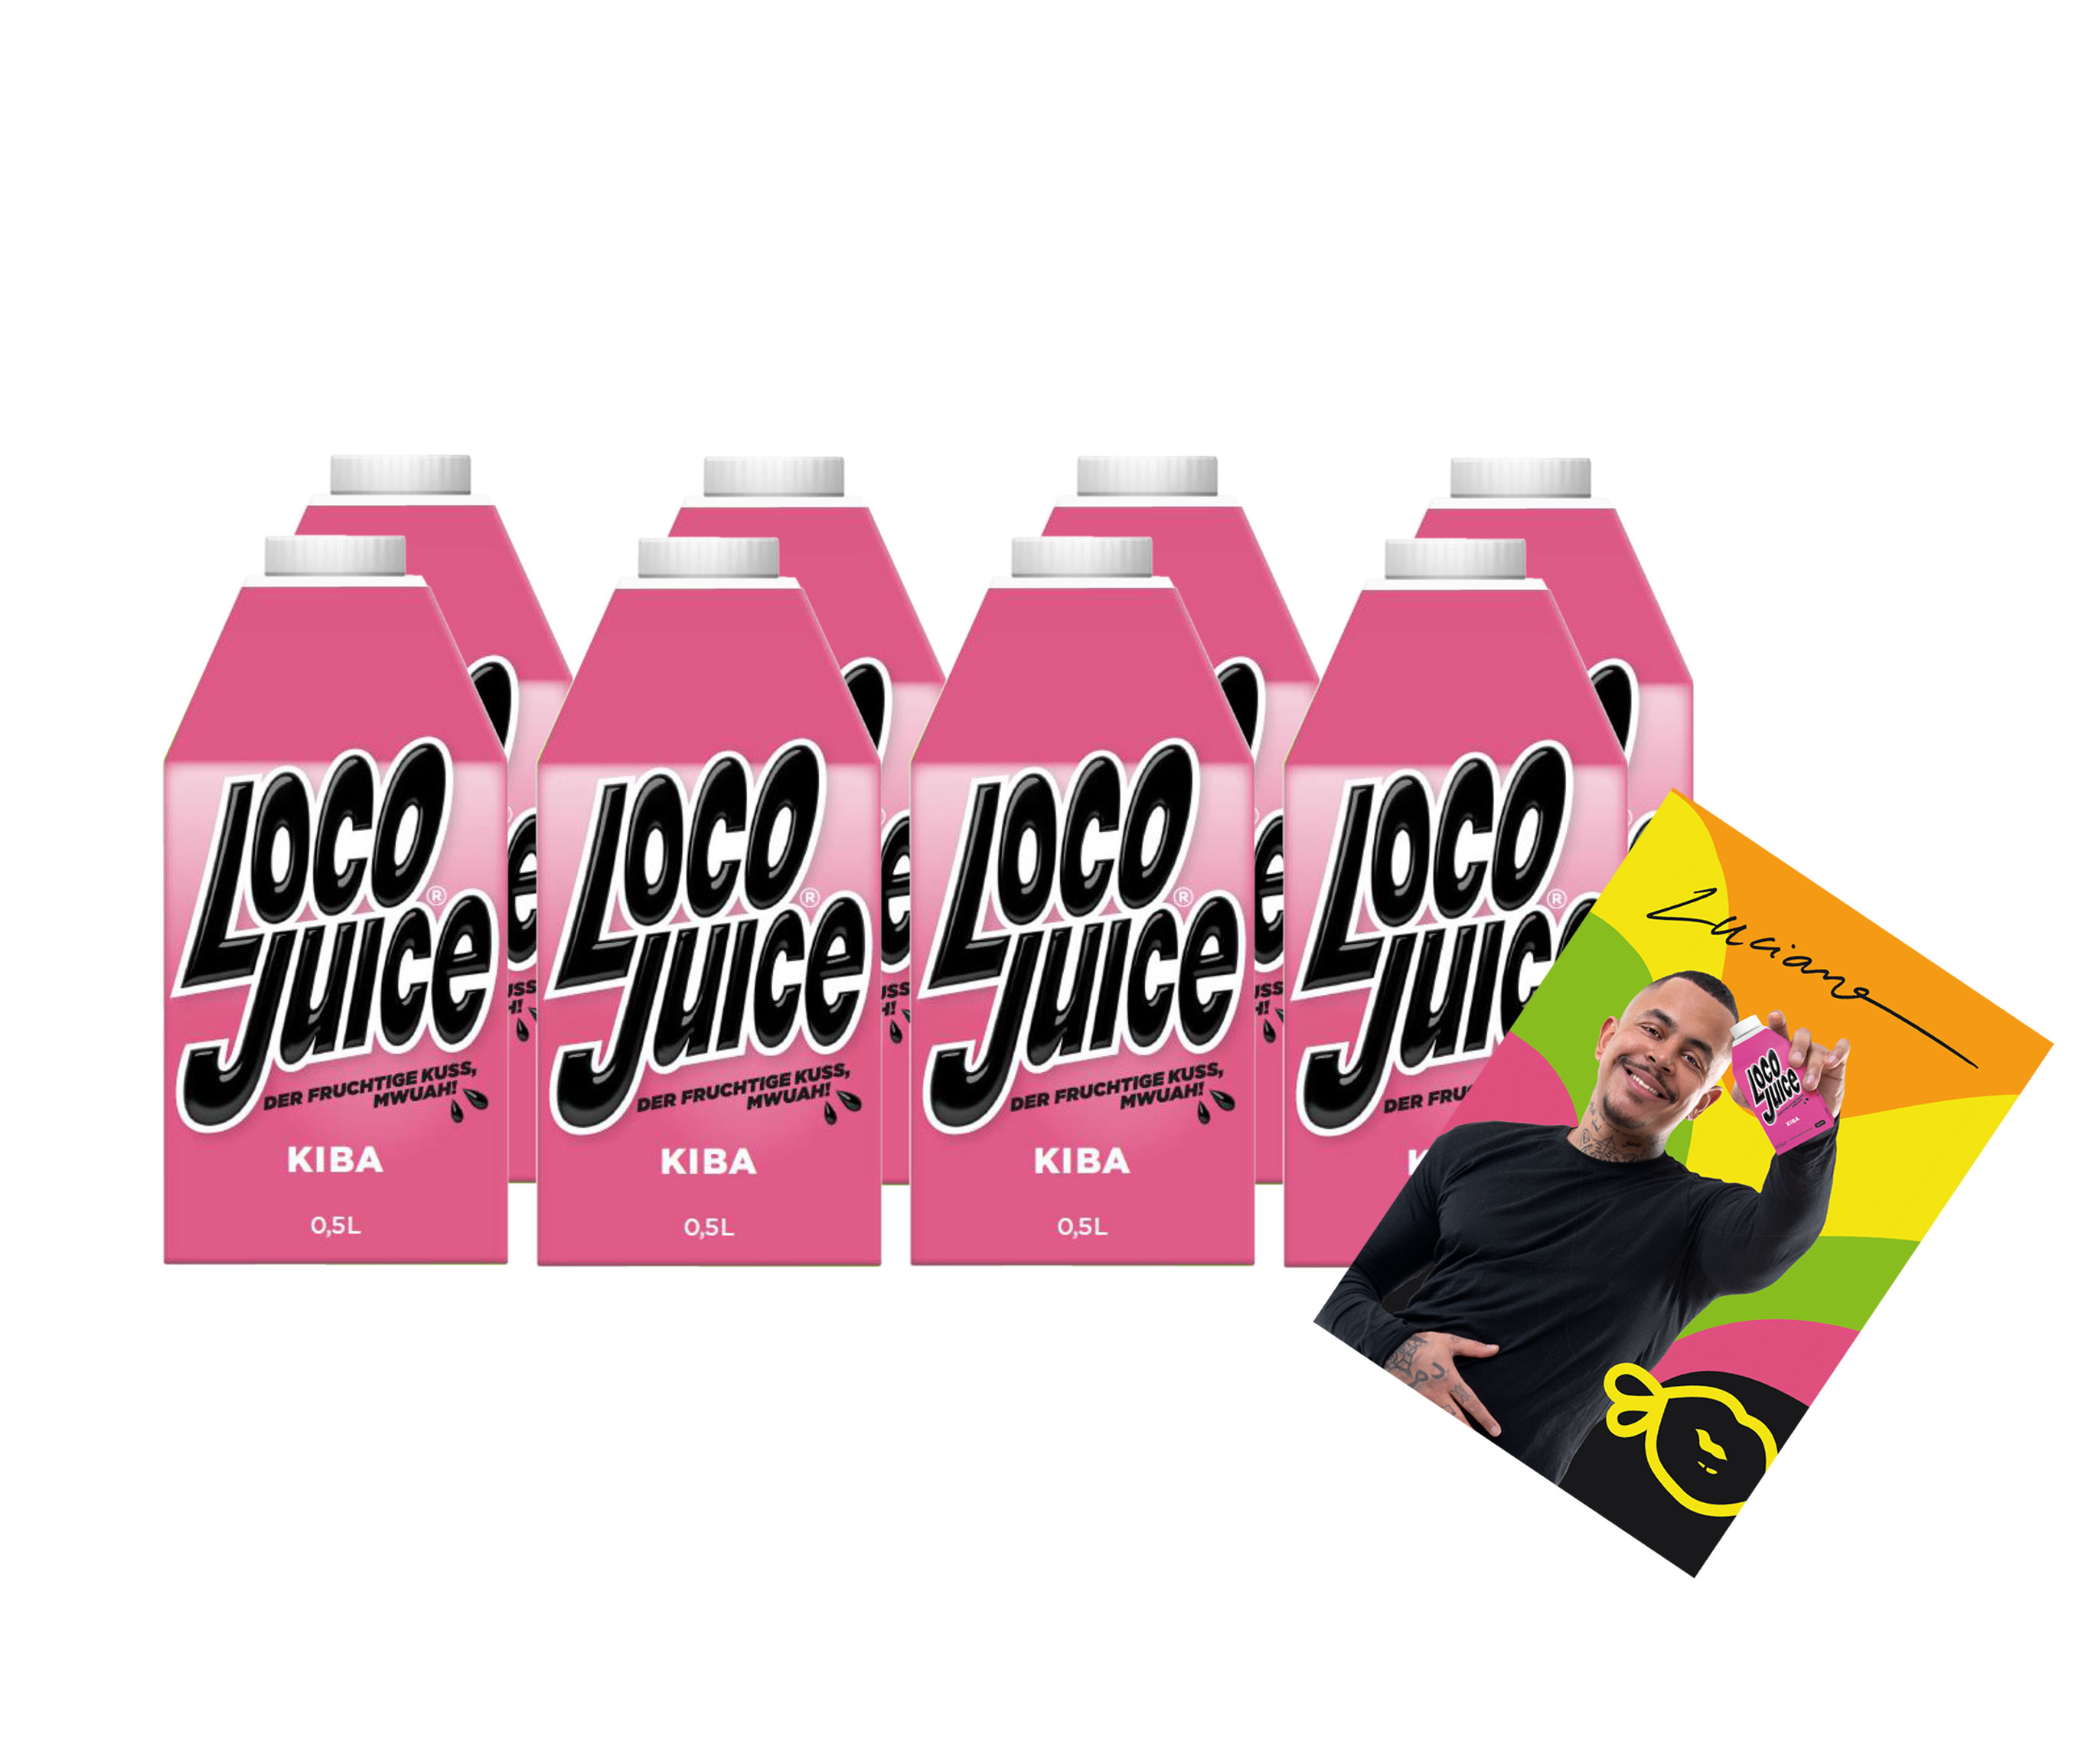 Loco Juice 8er Set Kiba 8x 0,5L von Luciano der Fruchtige Mwuah Kirsch Banane + digitalisierte Autogrammkarte